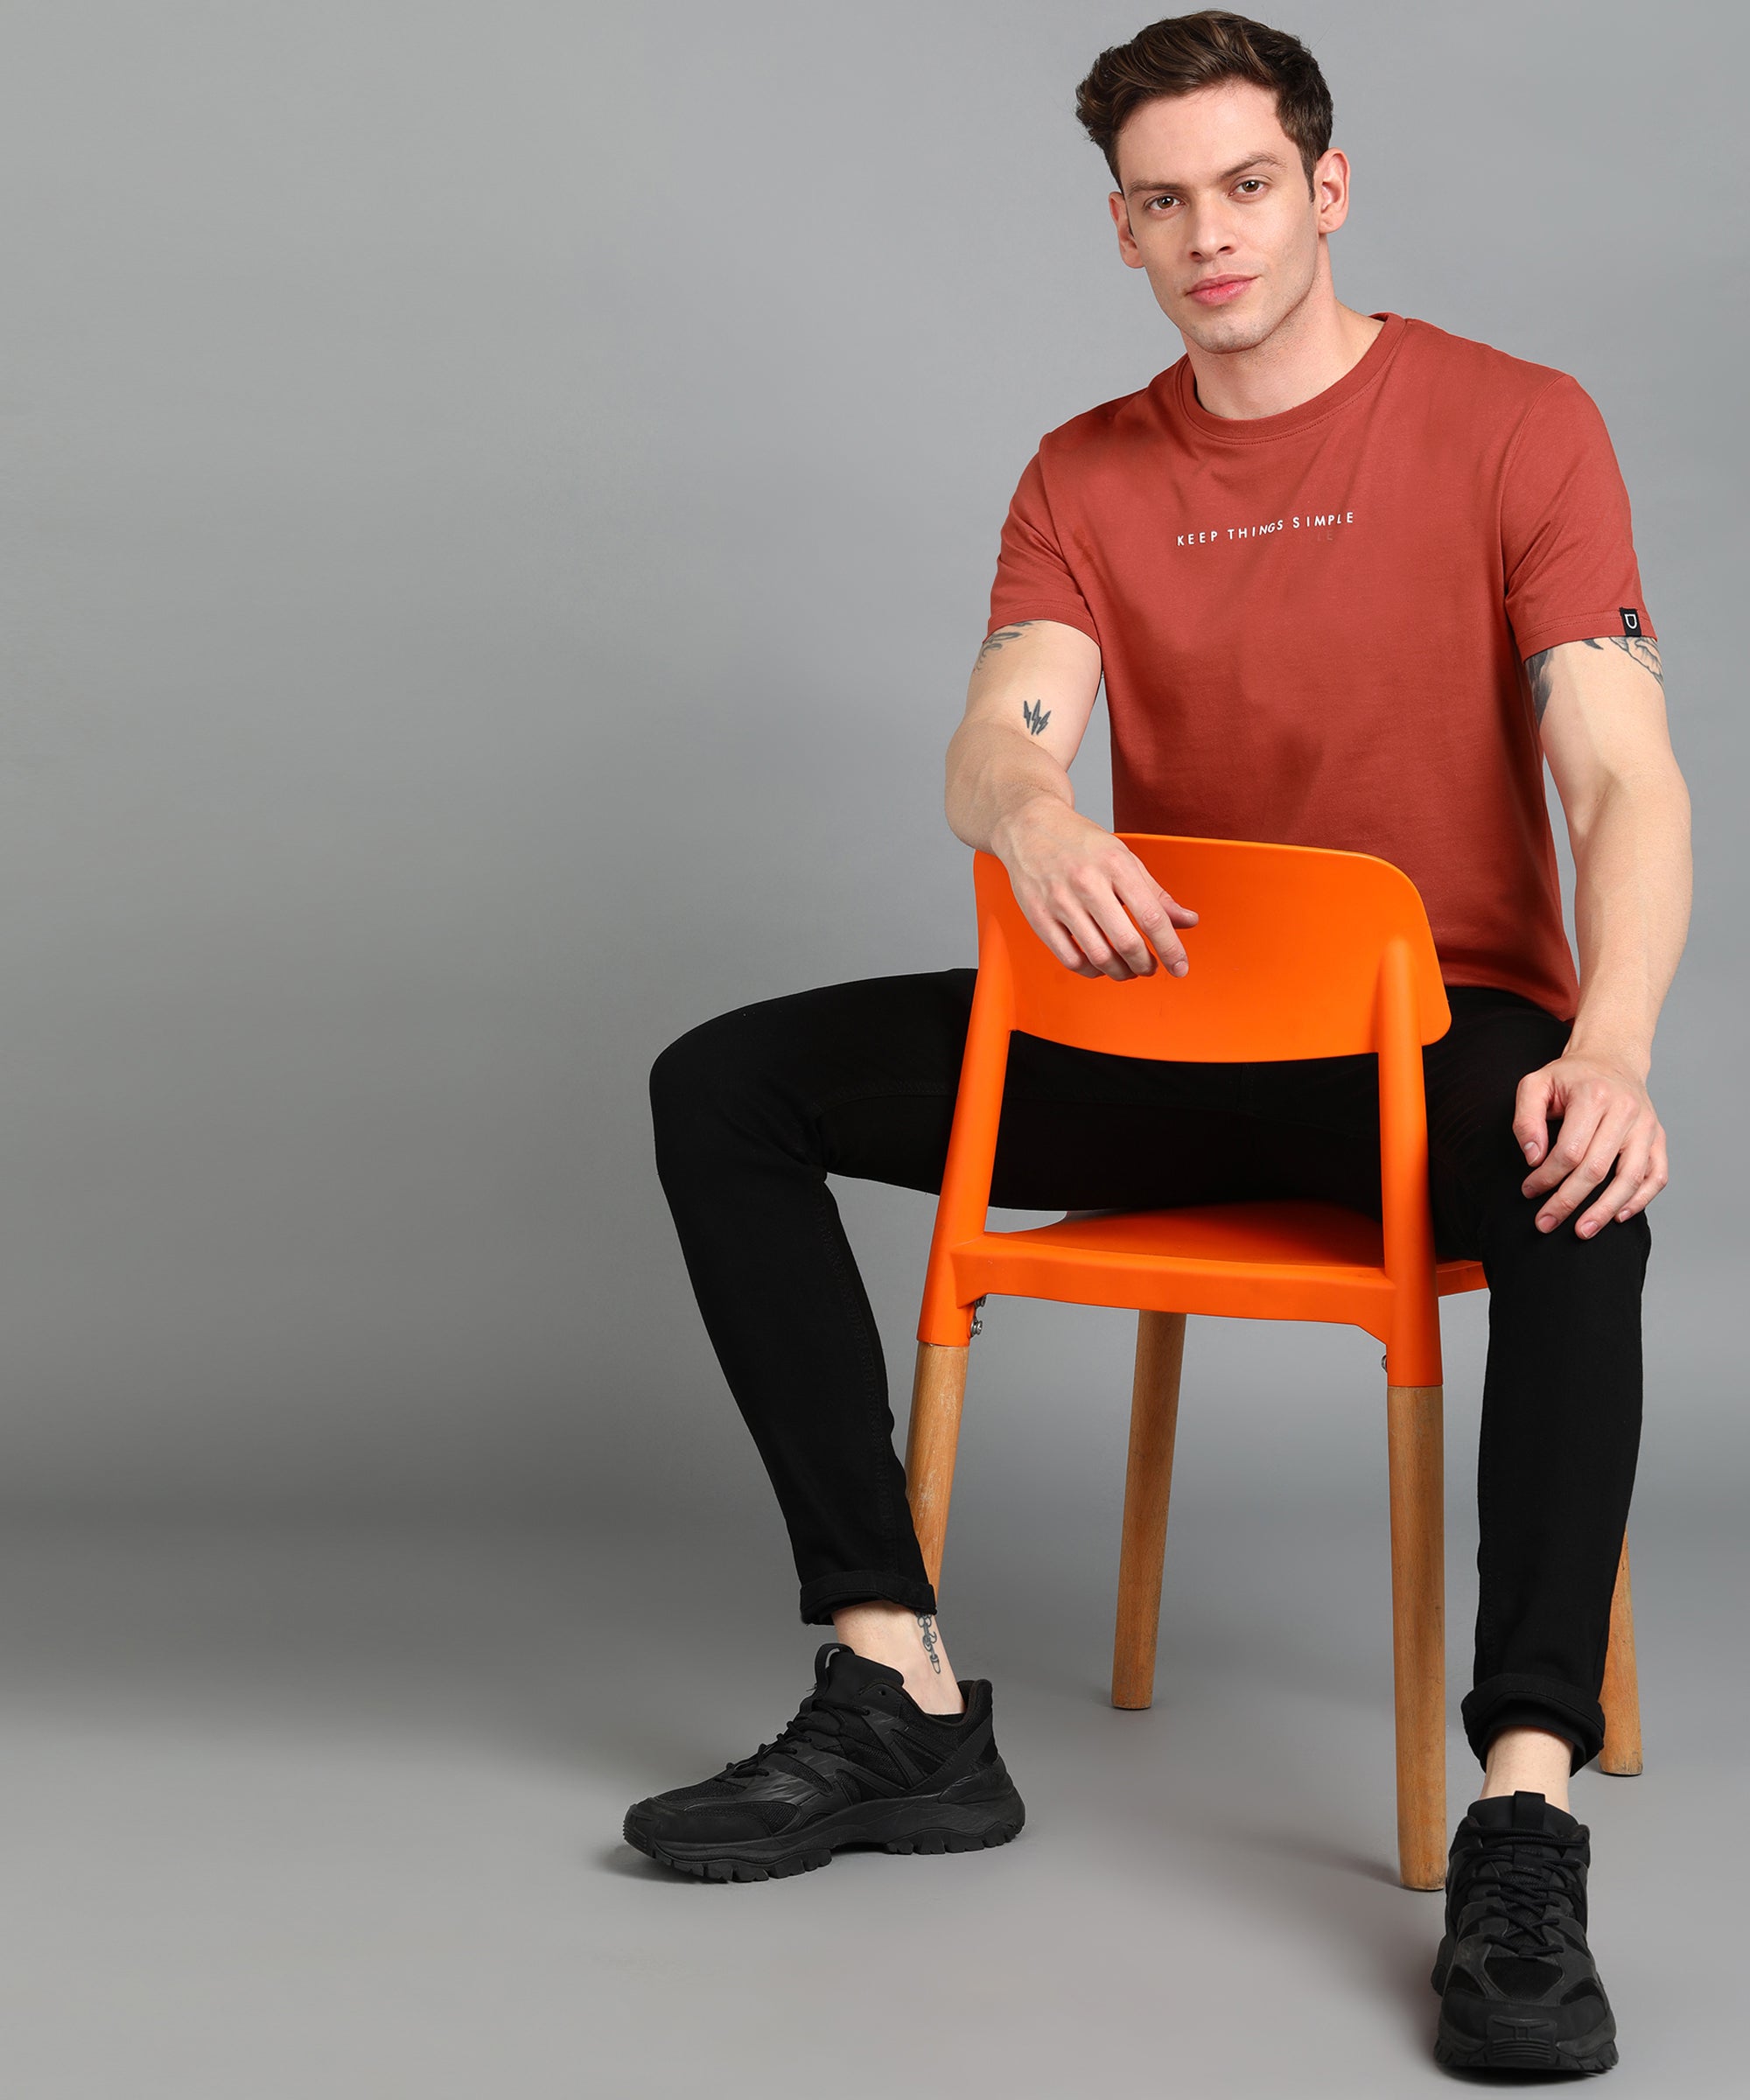 Men's Orange Graphic Printed Round Neck Half Sleeve Slim Fit Cotton T-Shirt